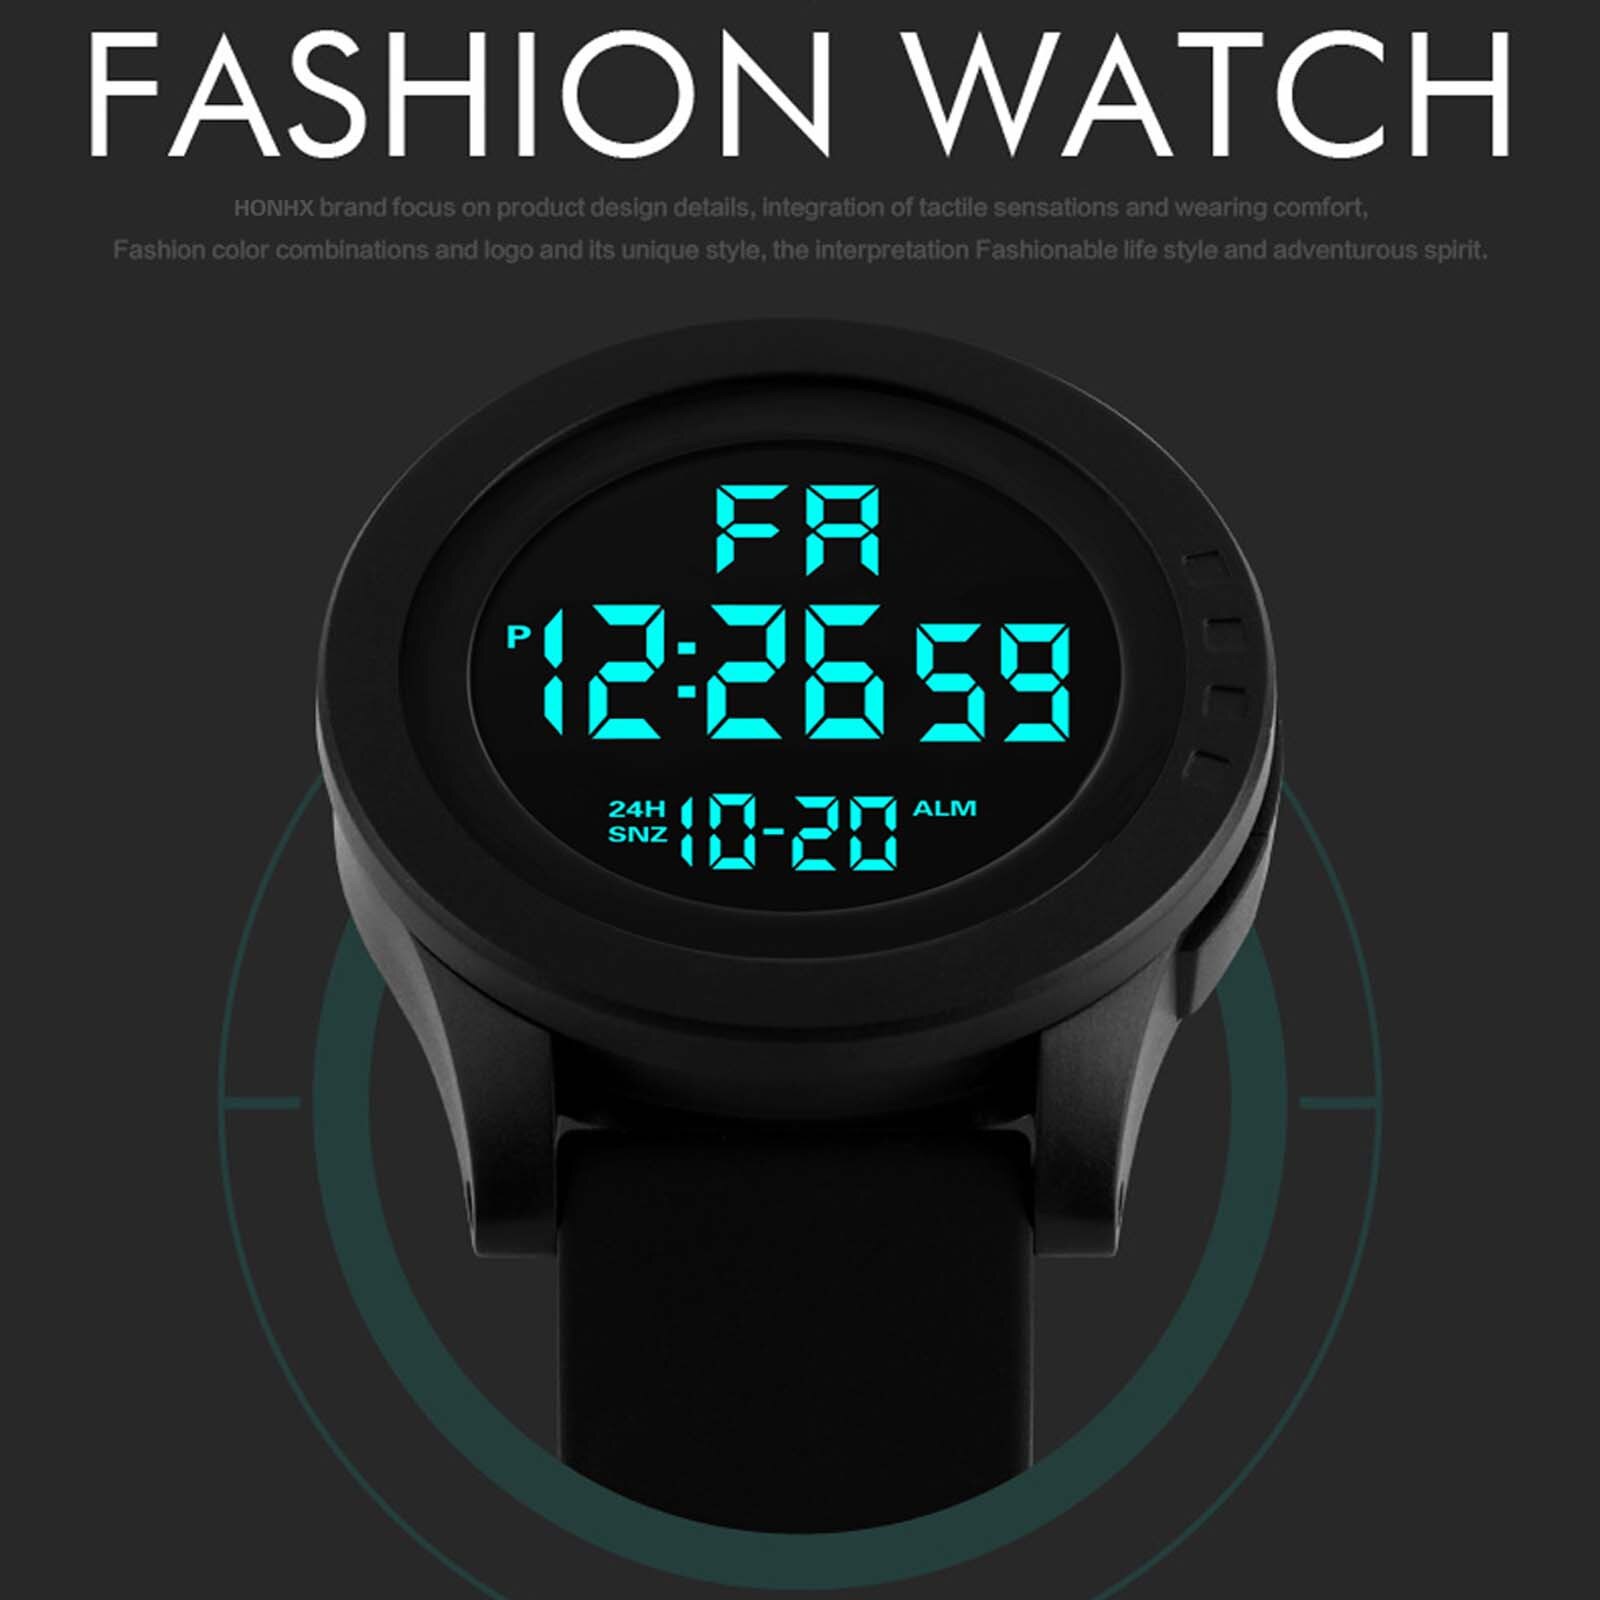 Luxe Horloges Heren Honhx Mens Led Digitale Display Horloge Datum Sport Vrouwen Outdoor Elektronische Horloge Часы Мужские #3